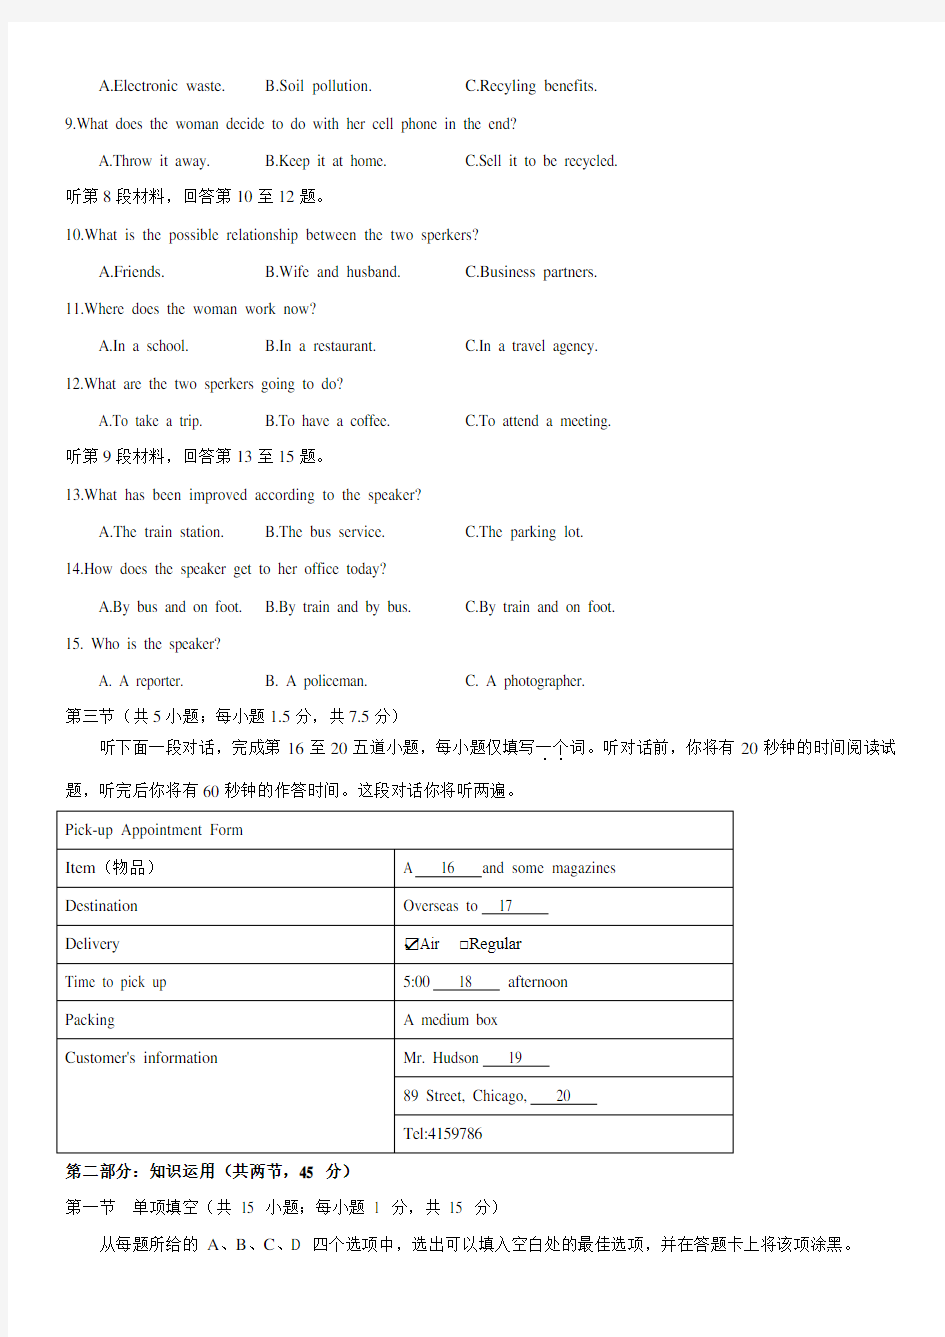 (完整版)2017年北京高考英语试卷